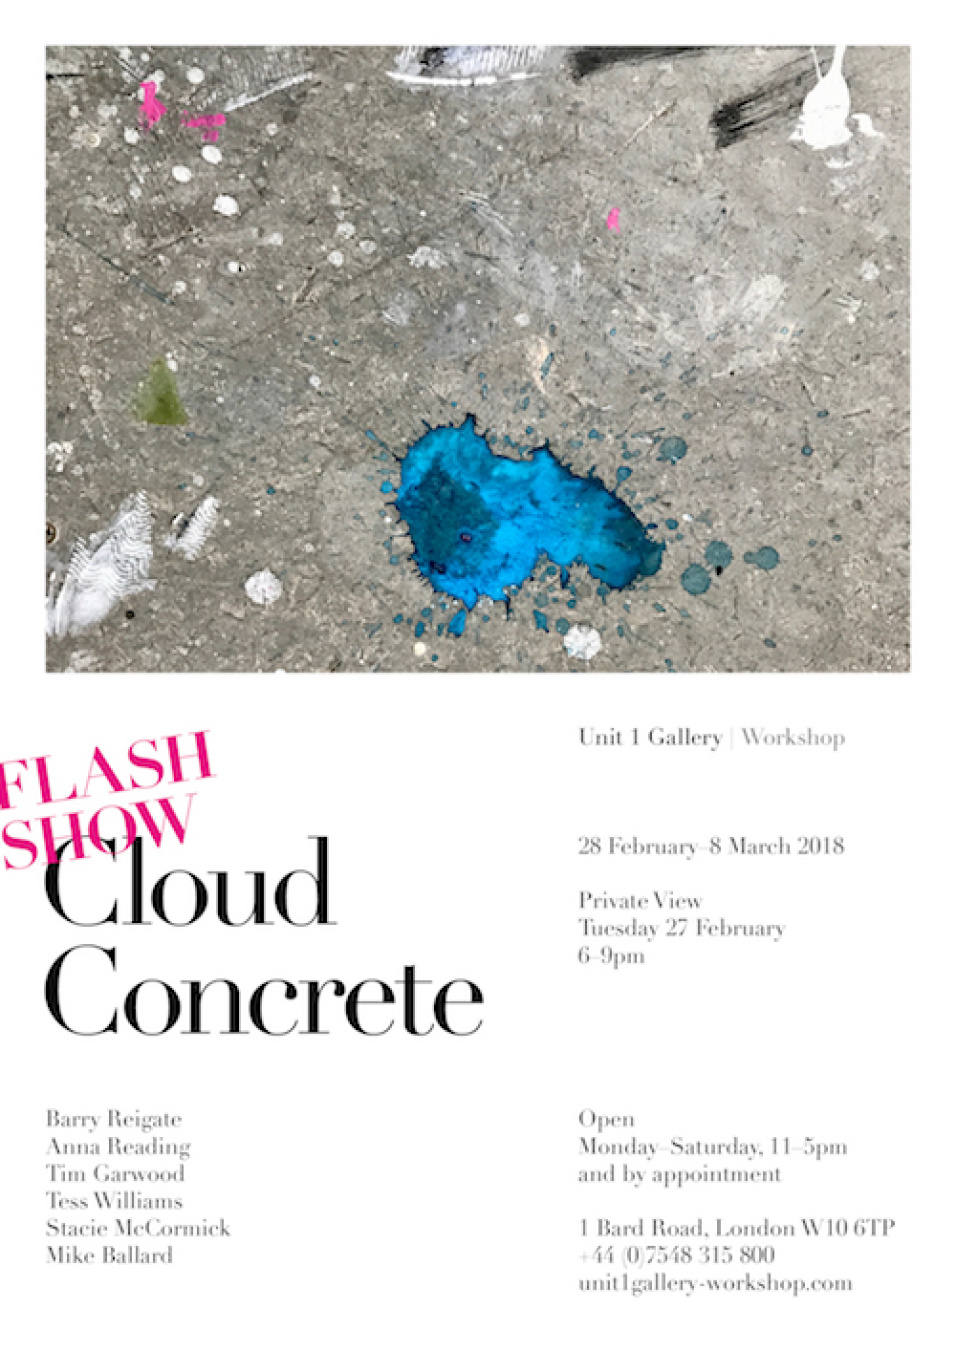 Cloud Concrete - Unit 1 Gallery